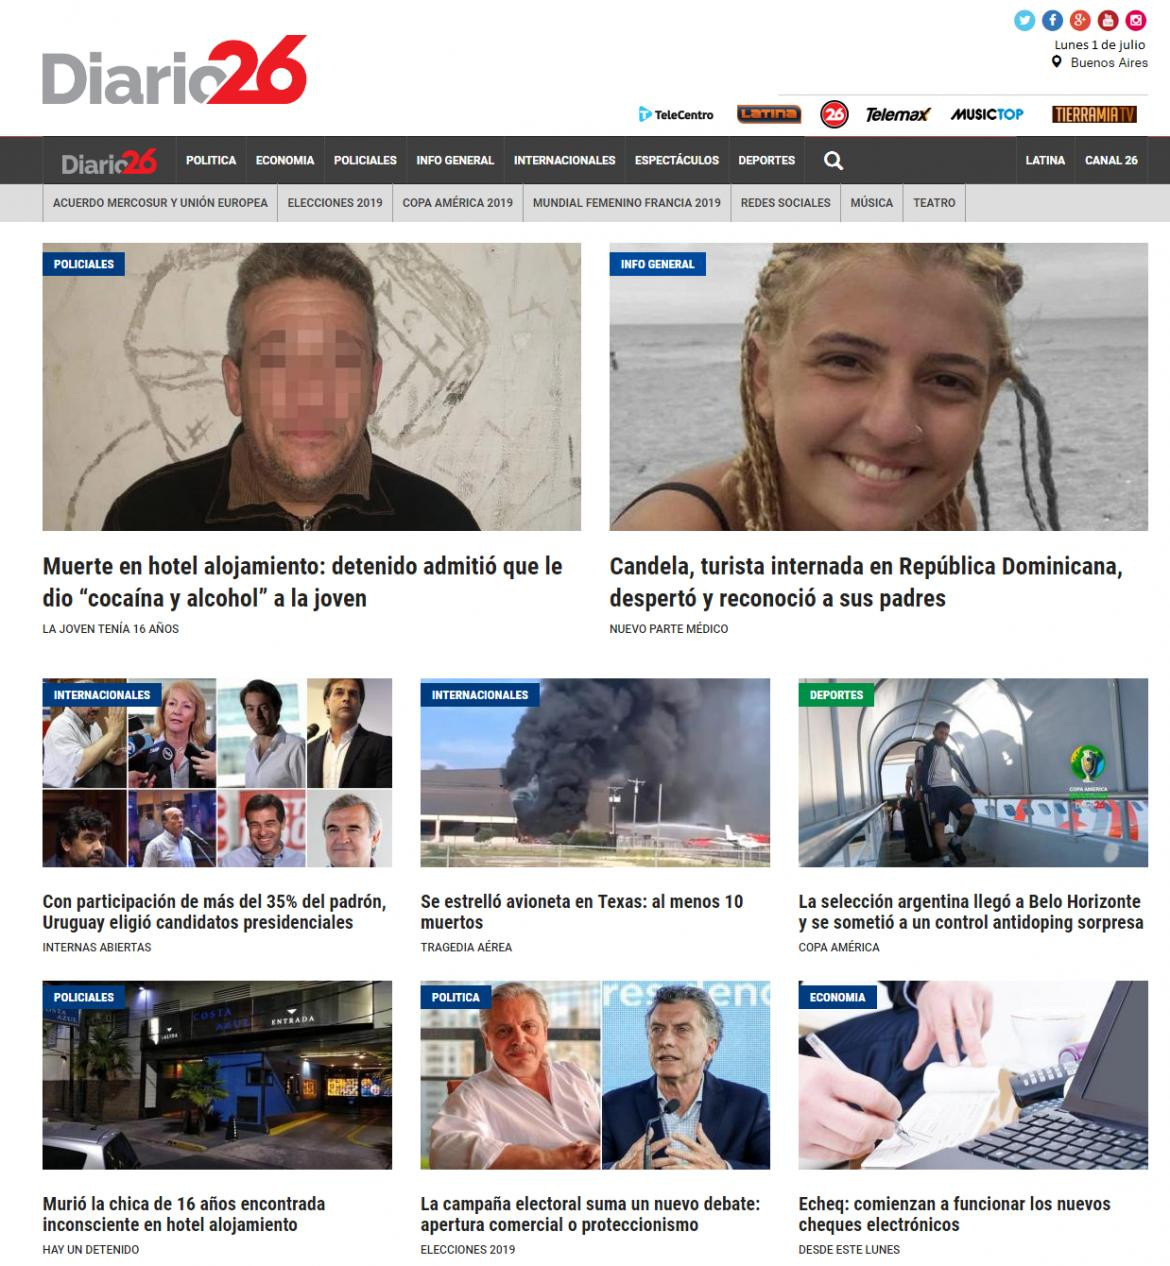 Tapas de diarios - Diario 26 lunes 1-07-19